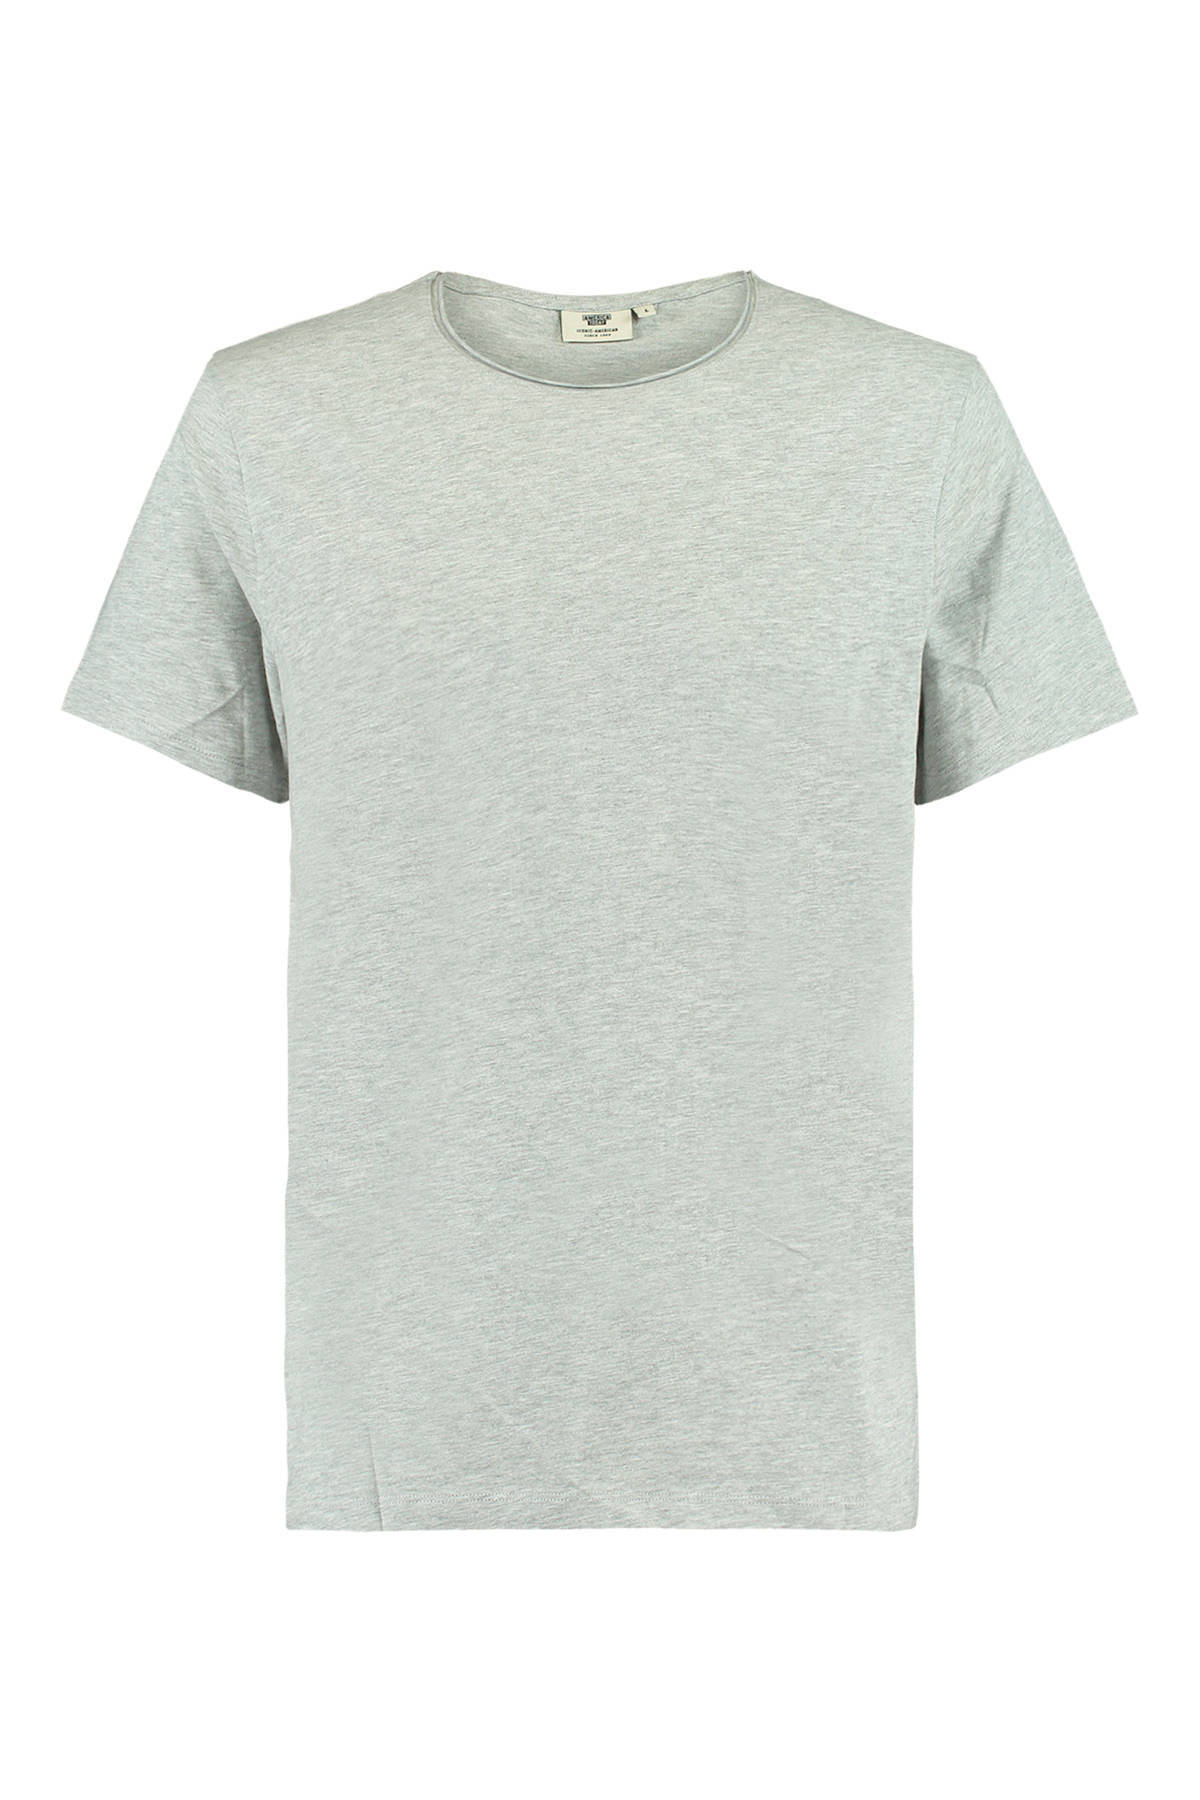 America Today T shirt Took van biologisch katoen licht grijs melange online kopen